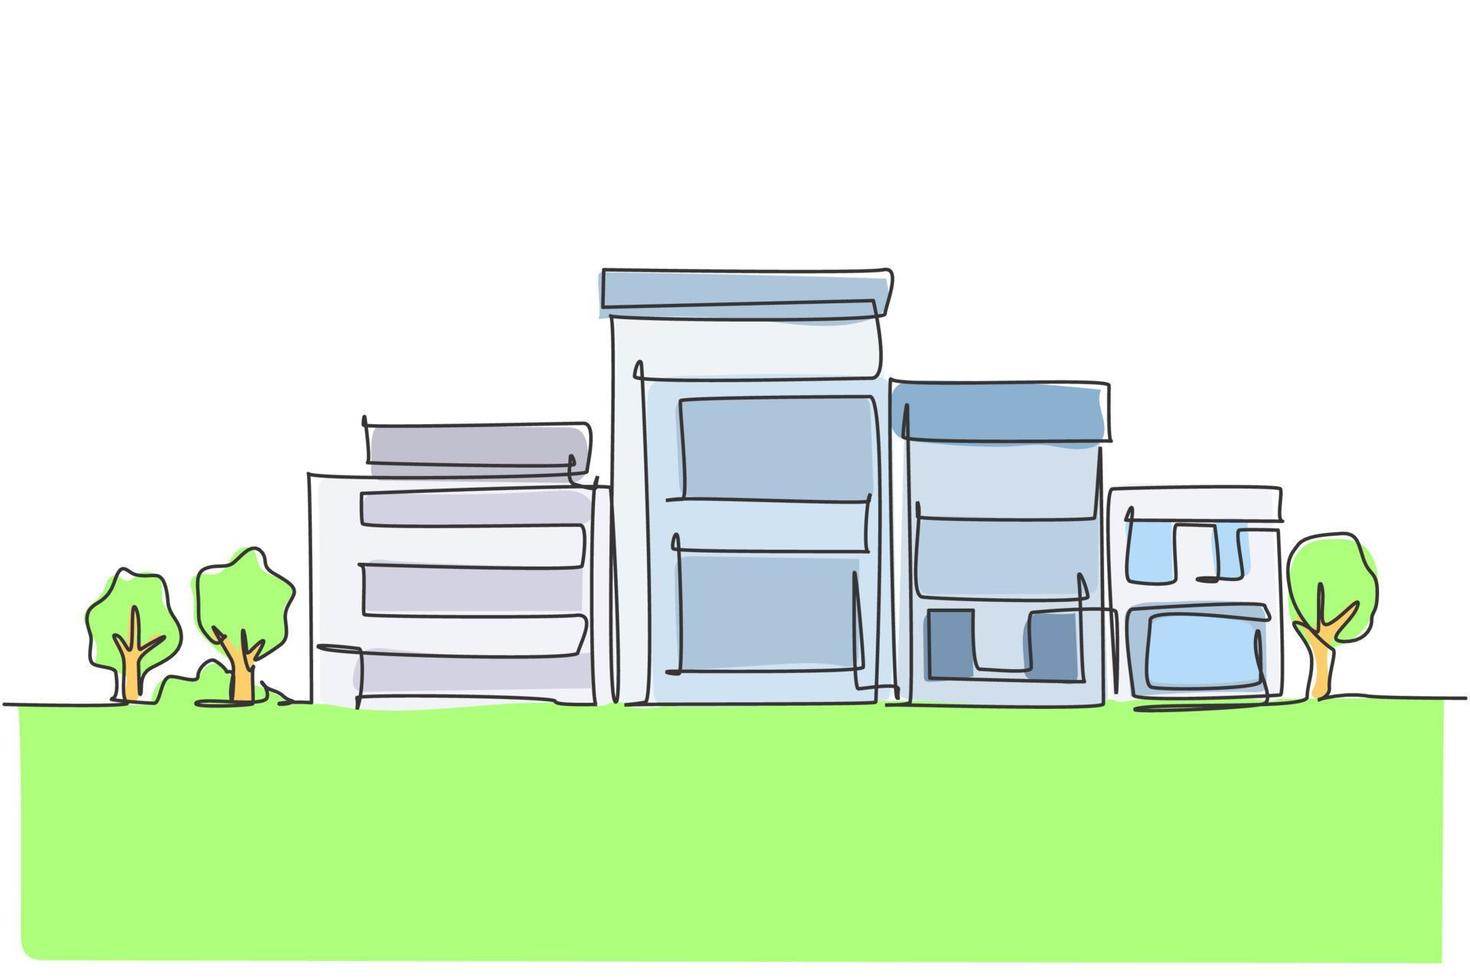 disegno a linea continua di una casa modesta e minimalista verde in città. concetto di minimalismo isolato immobiliare. illustrazione vettoriale di disegno grafico dinamico di una linea su sfondo bianco